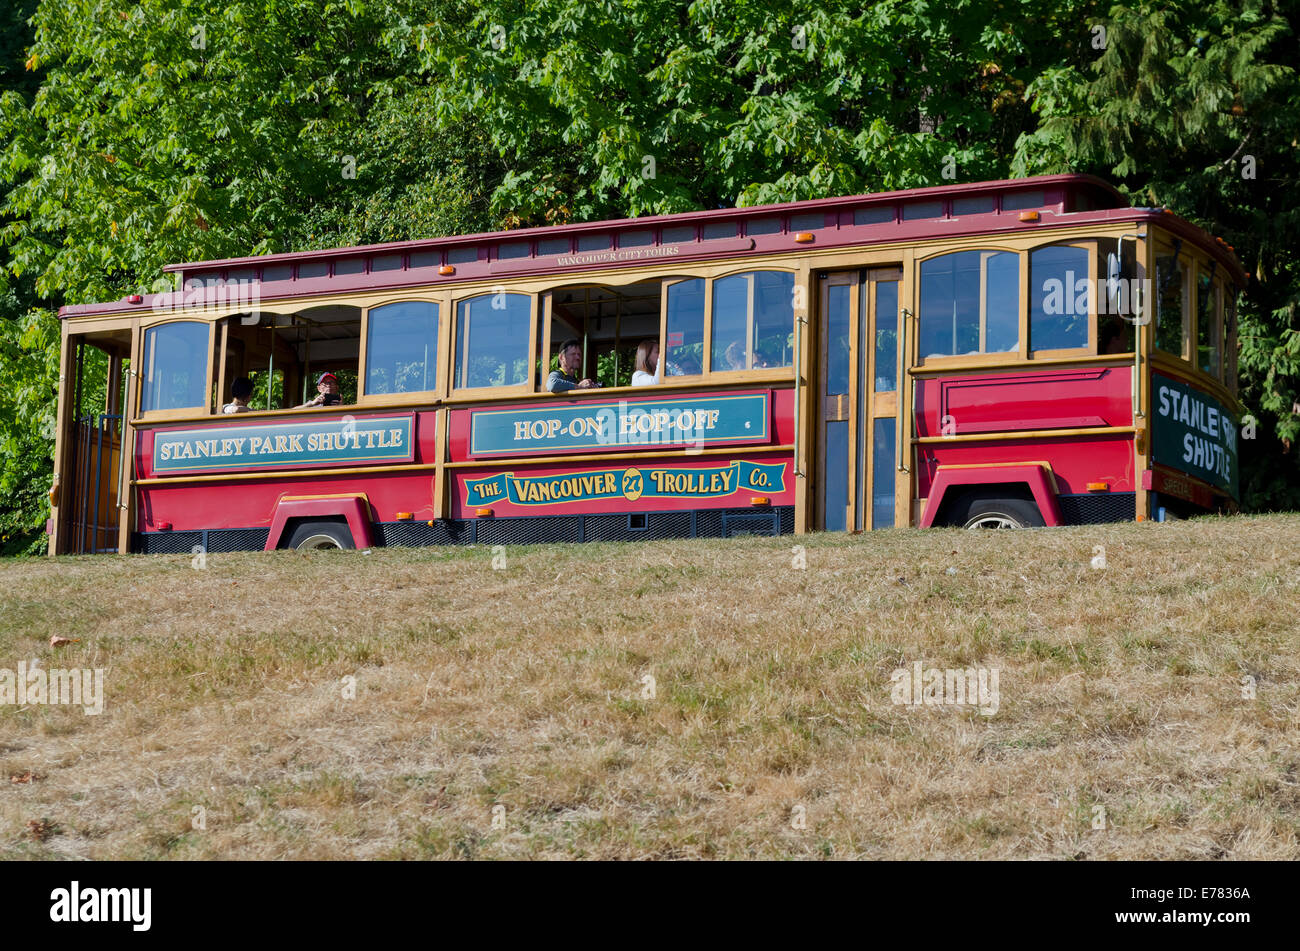 Stanley Park Shuttle Trolley Tour mit Touristen macht einen Stop in den wunderschönen Park in Vancouver, British Columbia, Kanada. Trolley bus tour. Stockfoto